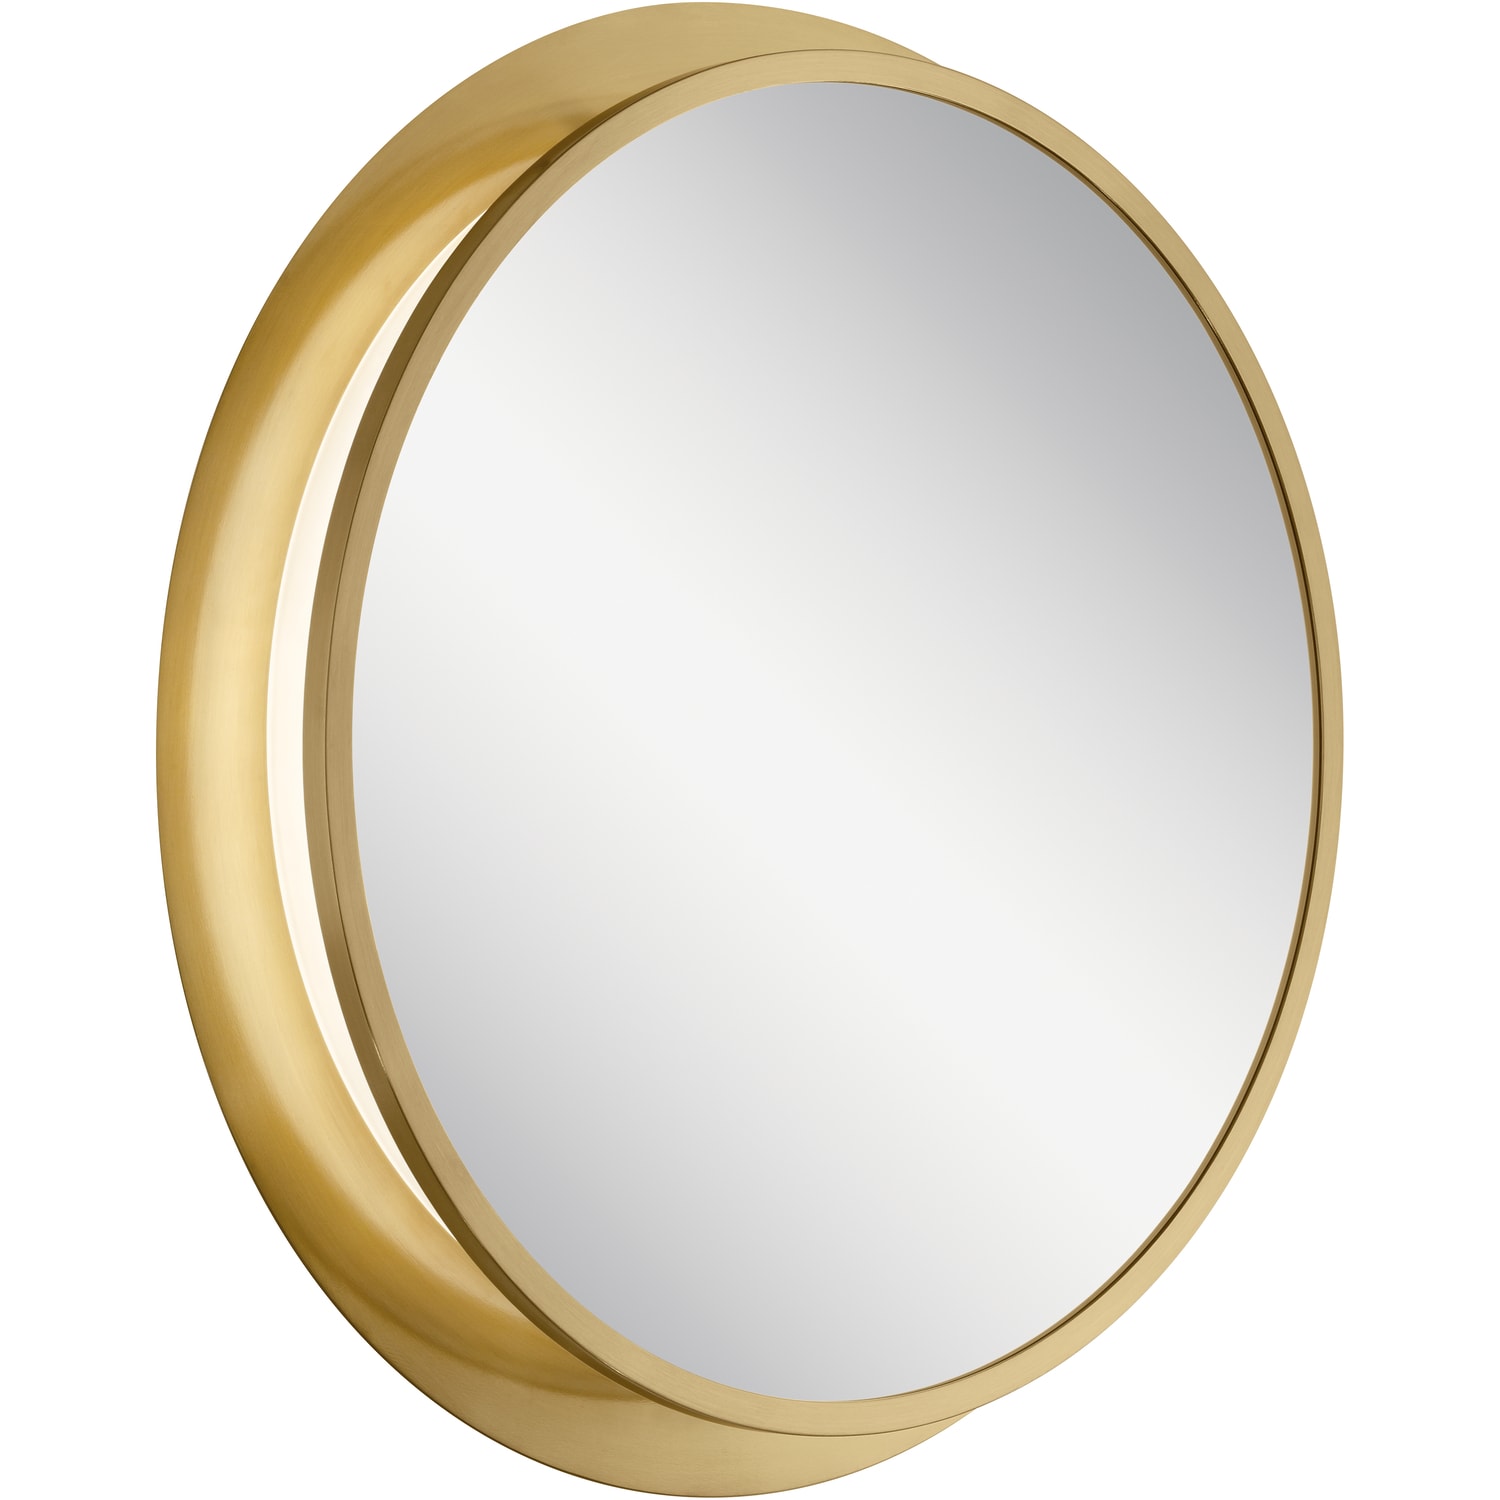 Round Framed Bathroom Mirror, Gold Framed Lighted Mirror